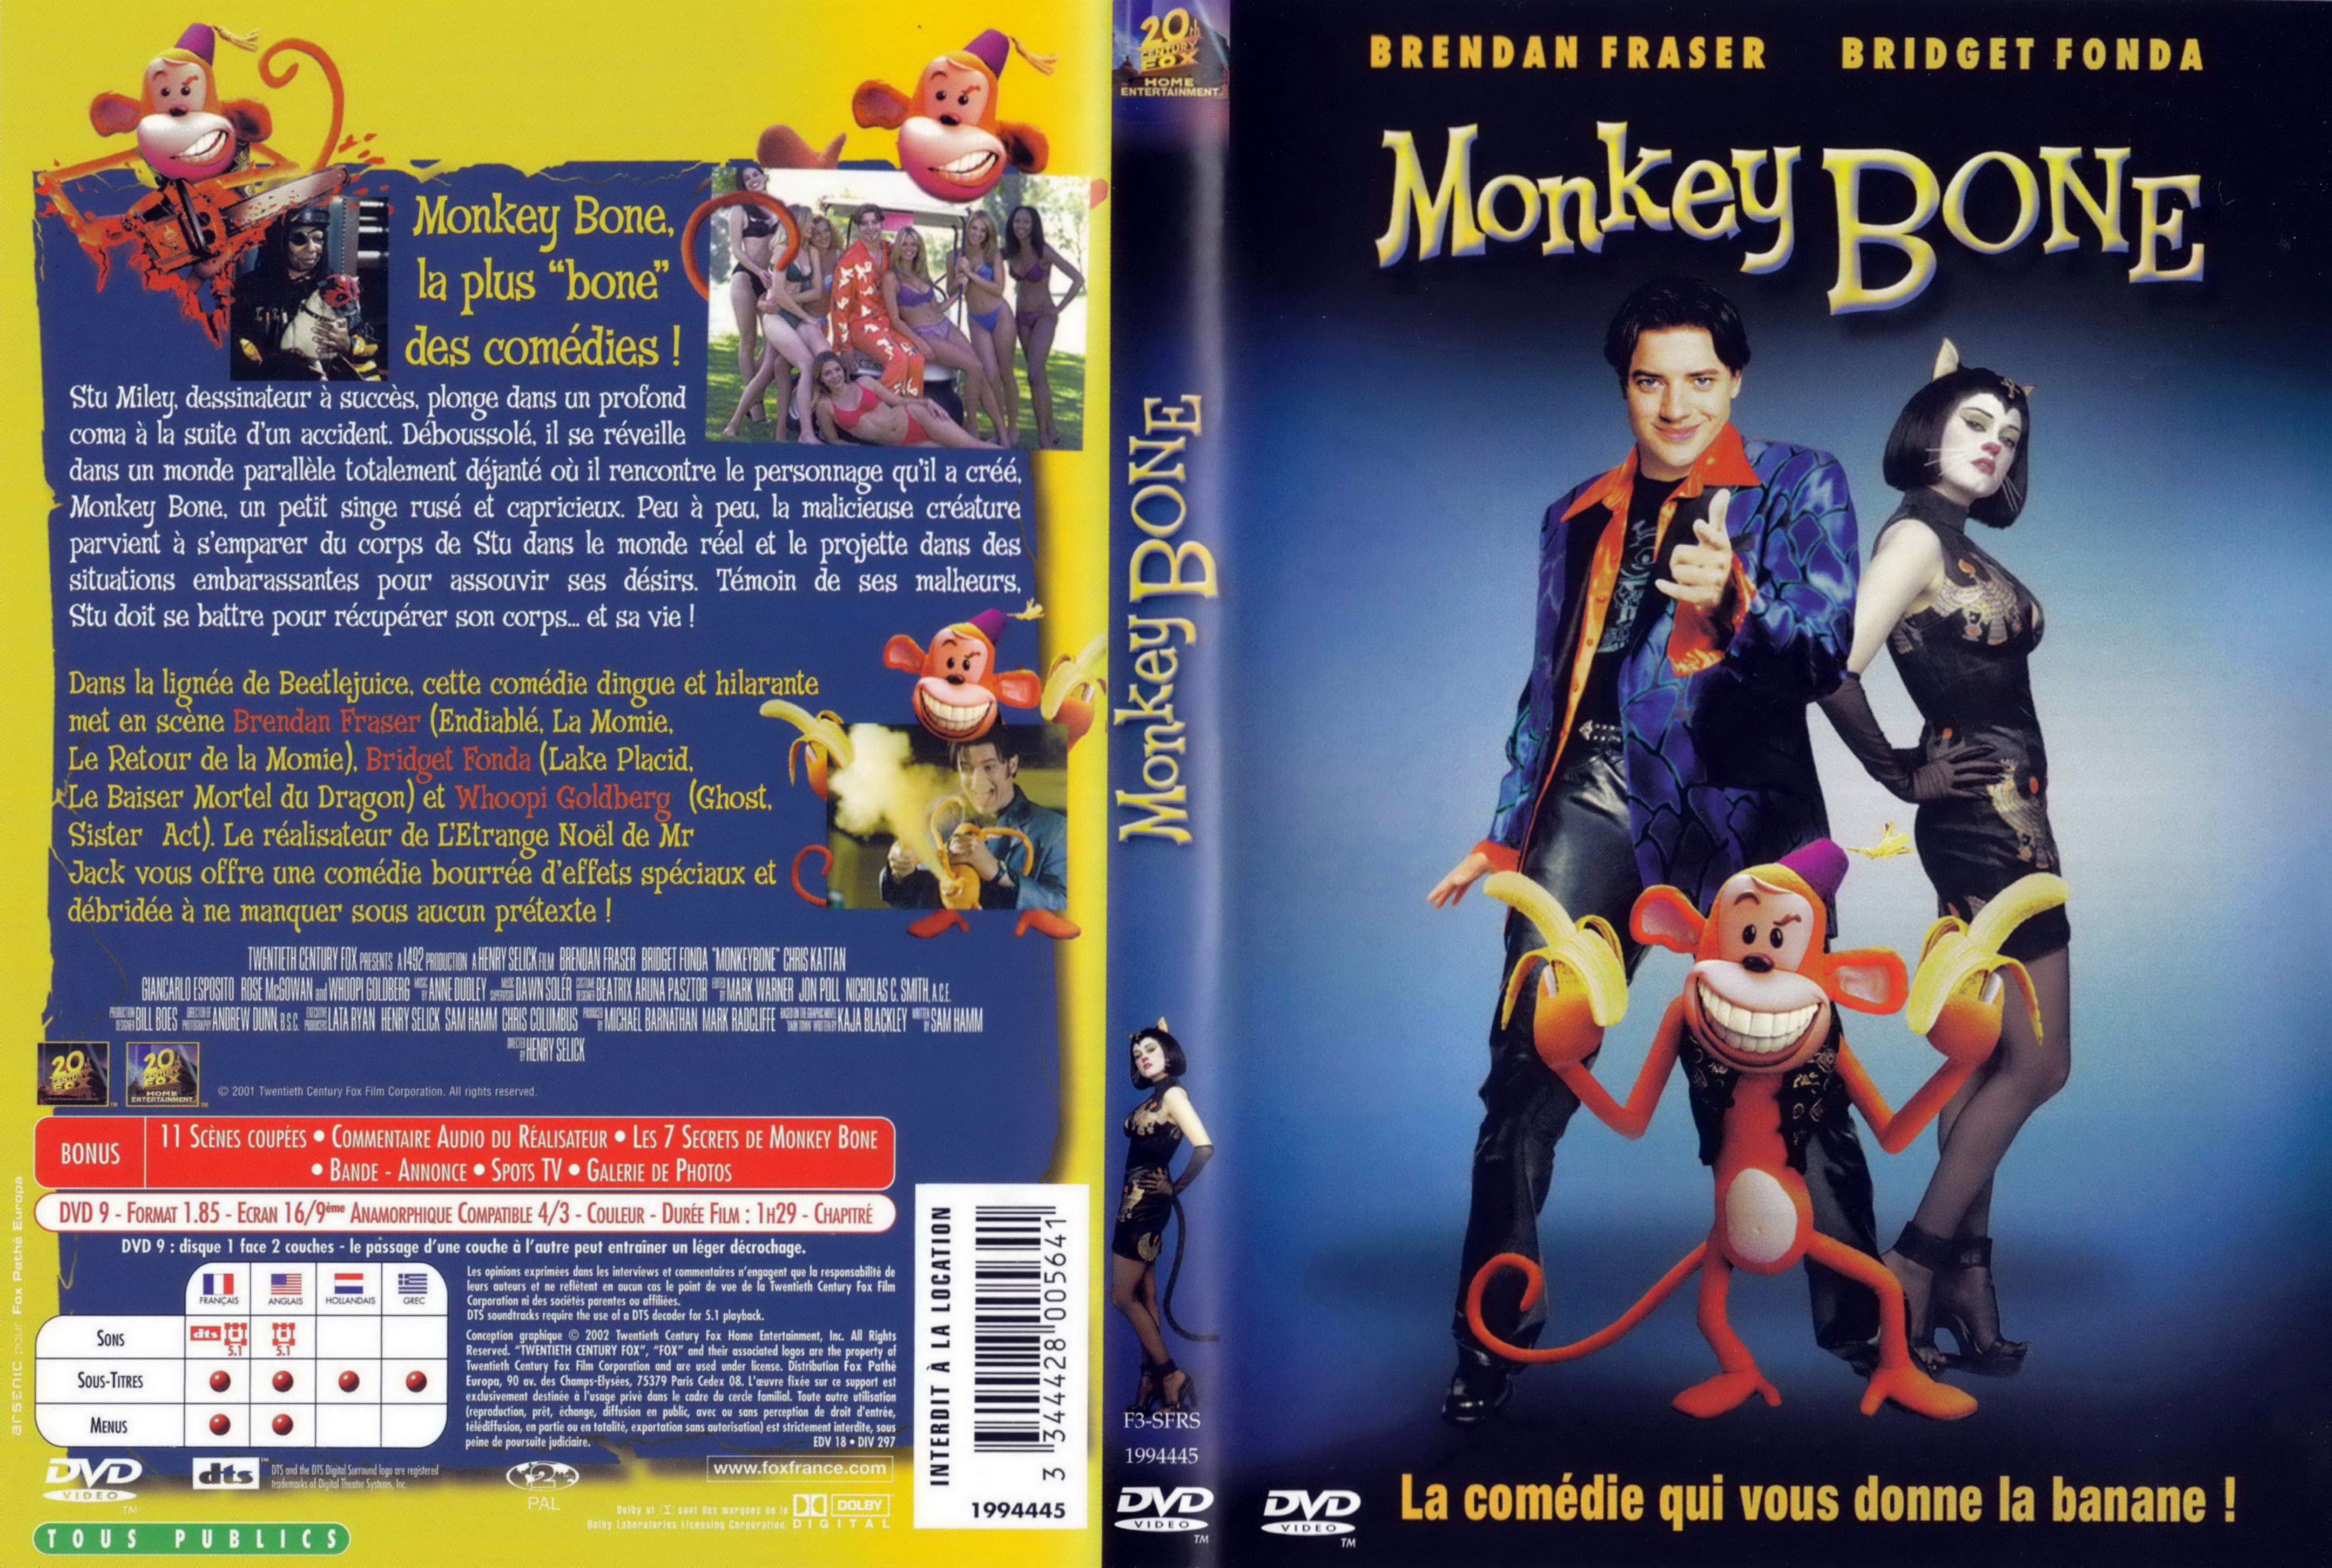 Jaquette DVD Monkey bone